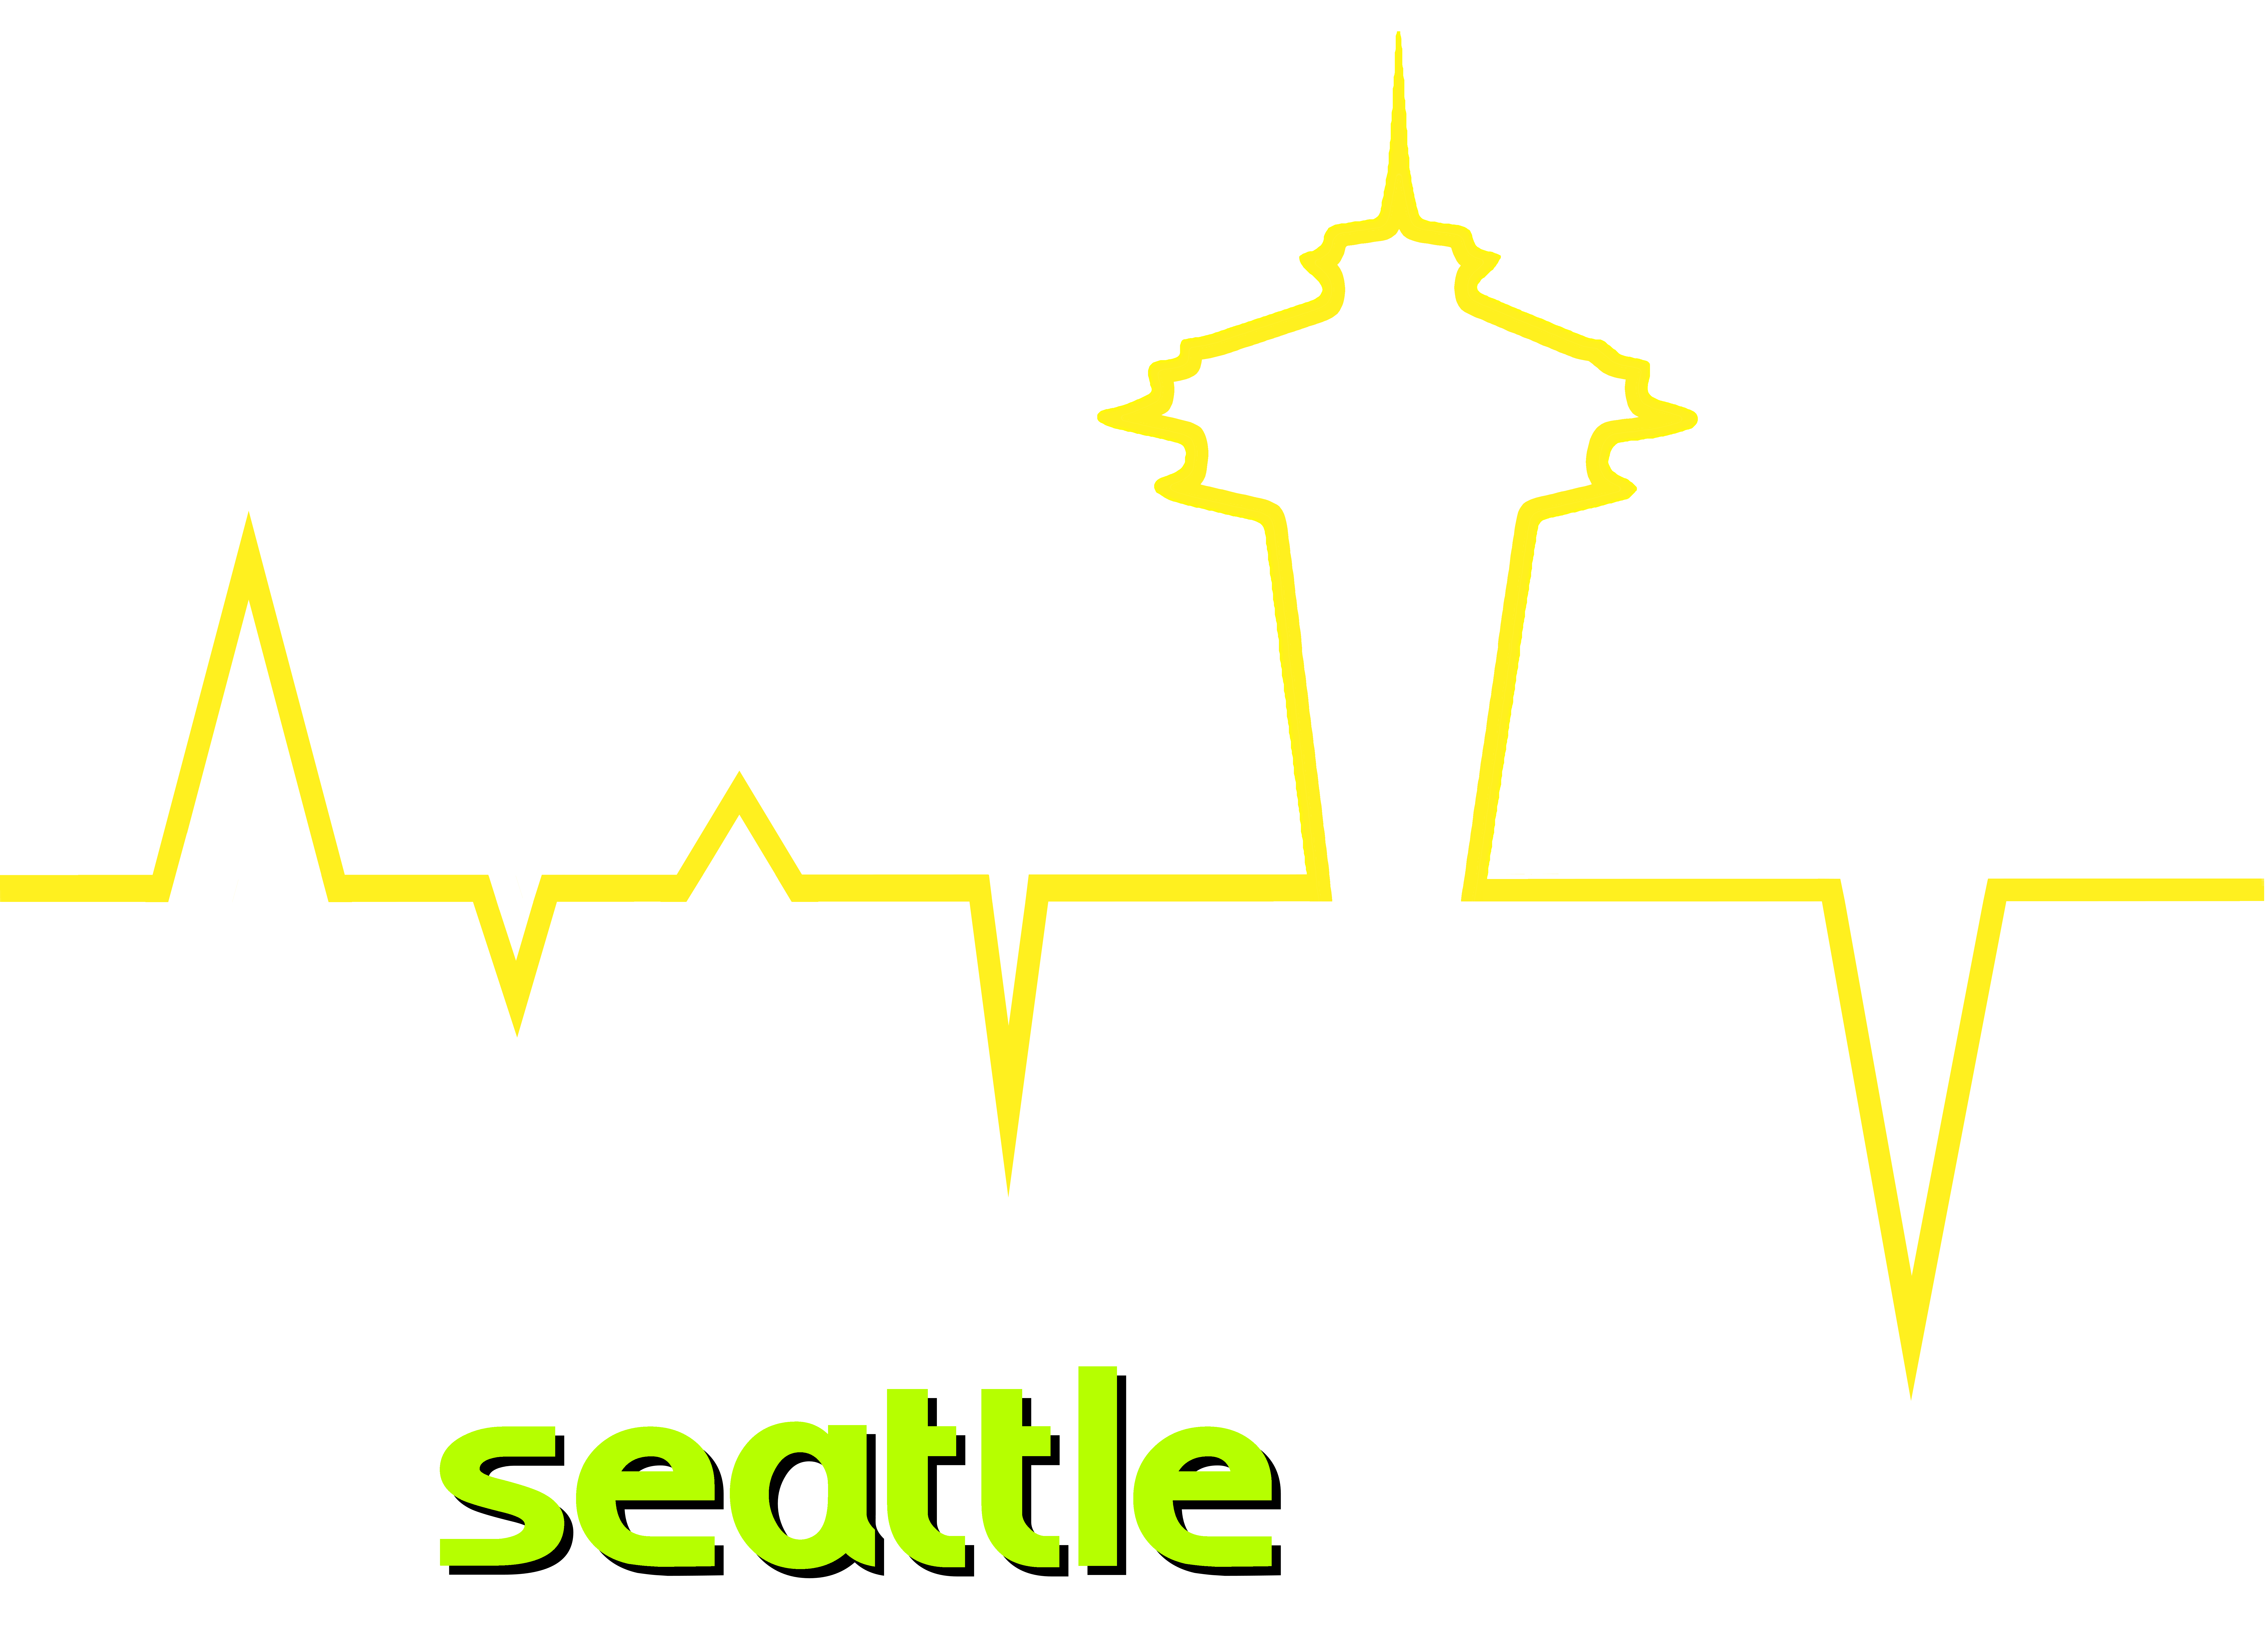 Heartbeat of Seattle